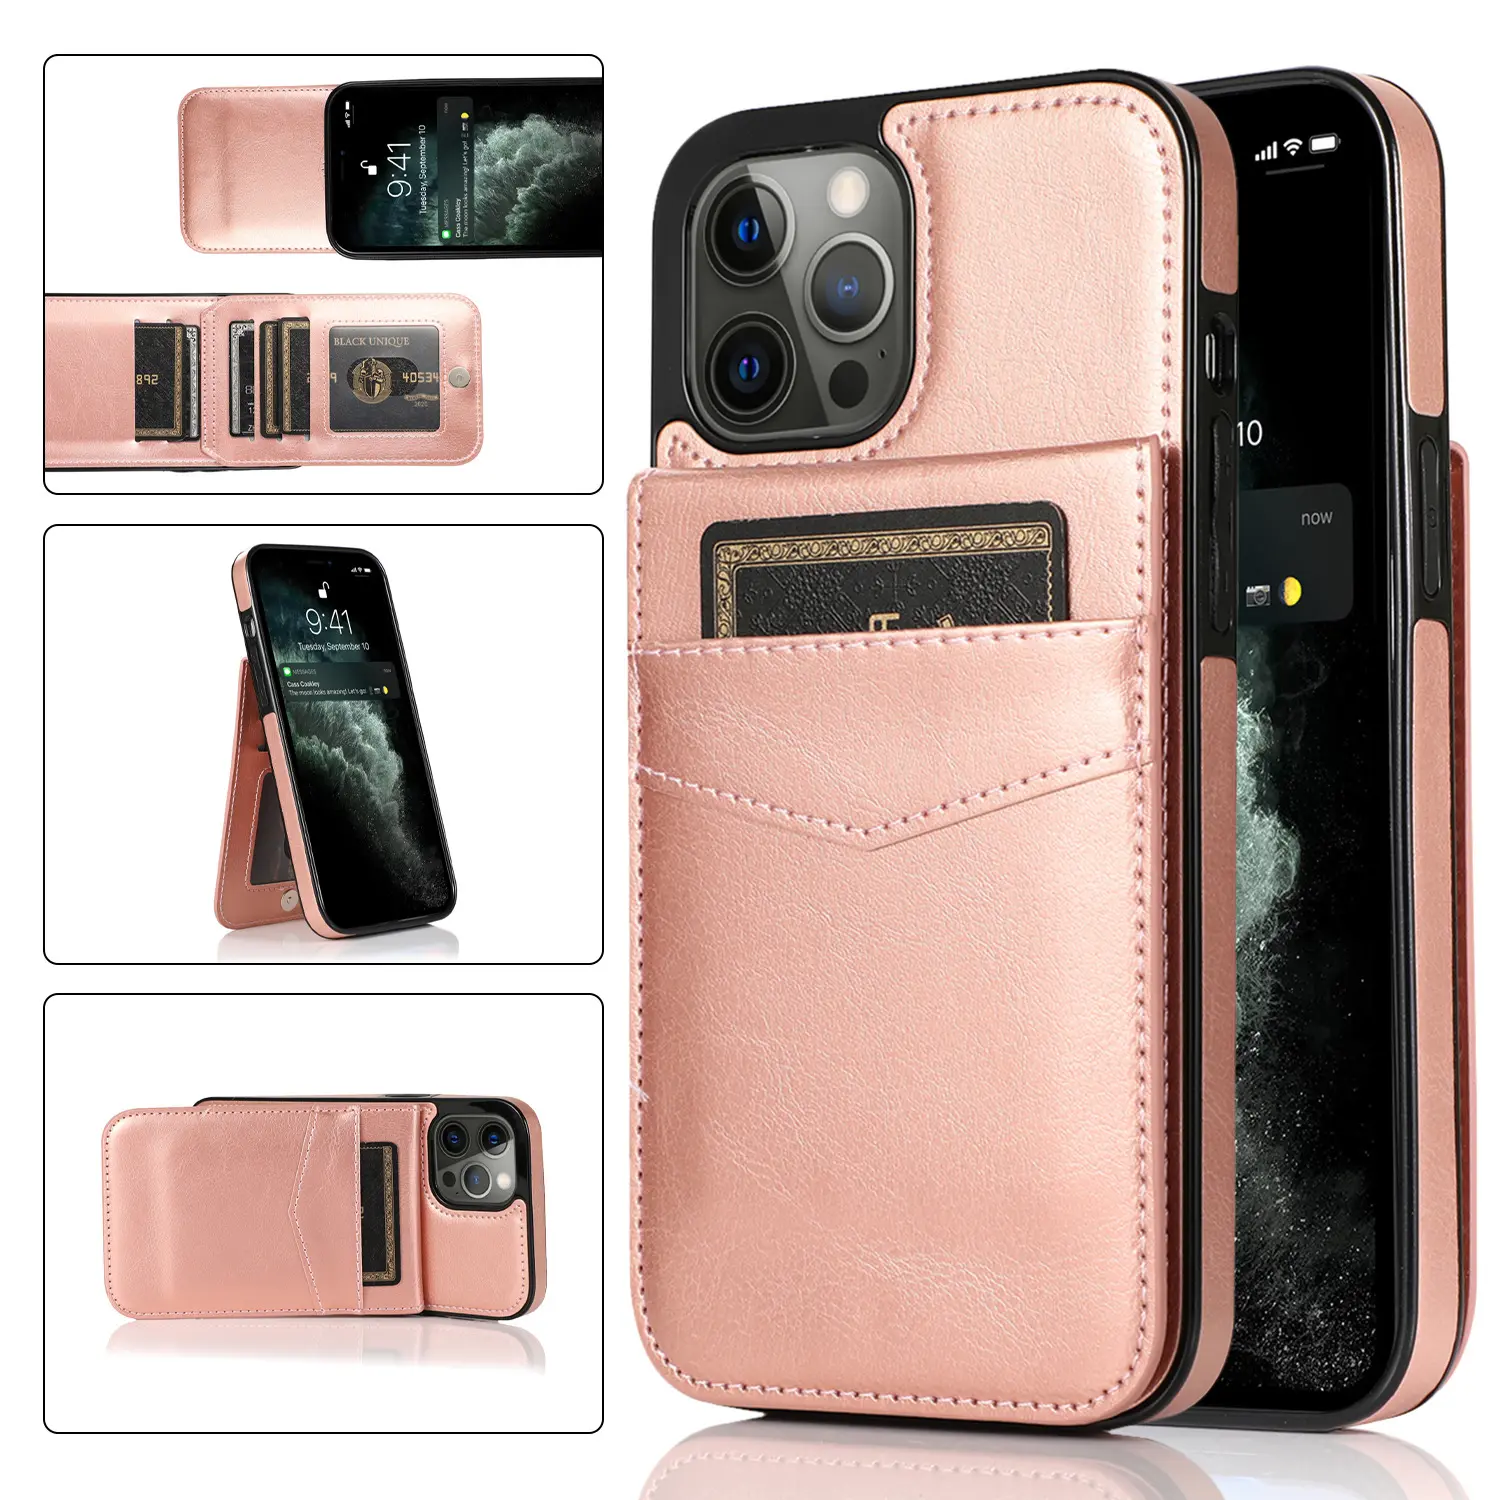 Custodia rigida in pelle PU custodia protettiva per cellulare custodia Multi porta carte portafoglio per iPhone 12 Mini 11 Pro Max XS